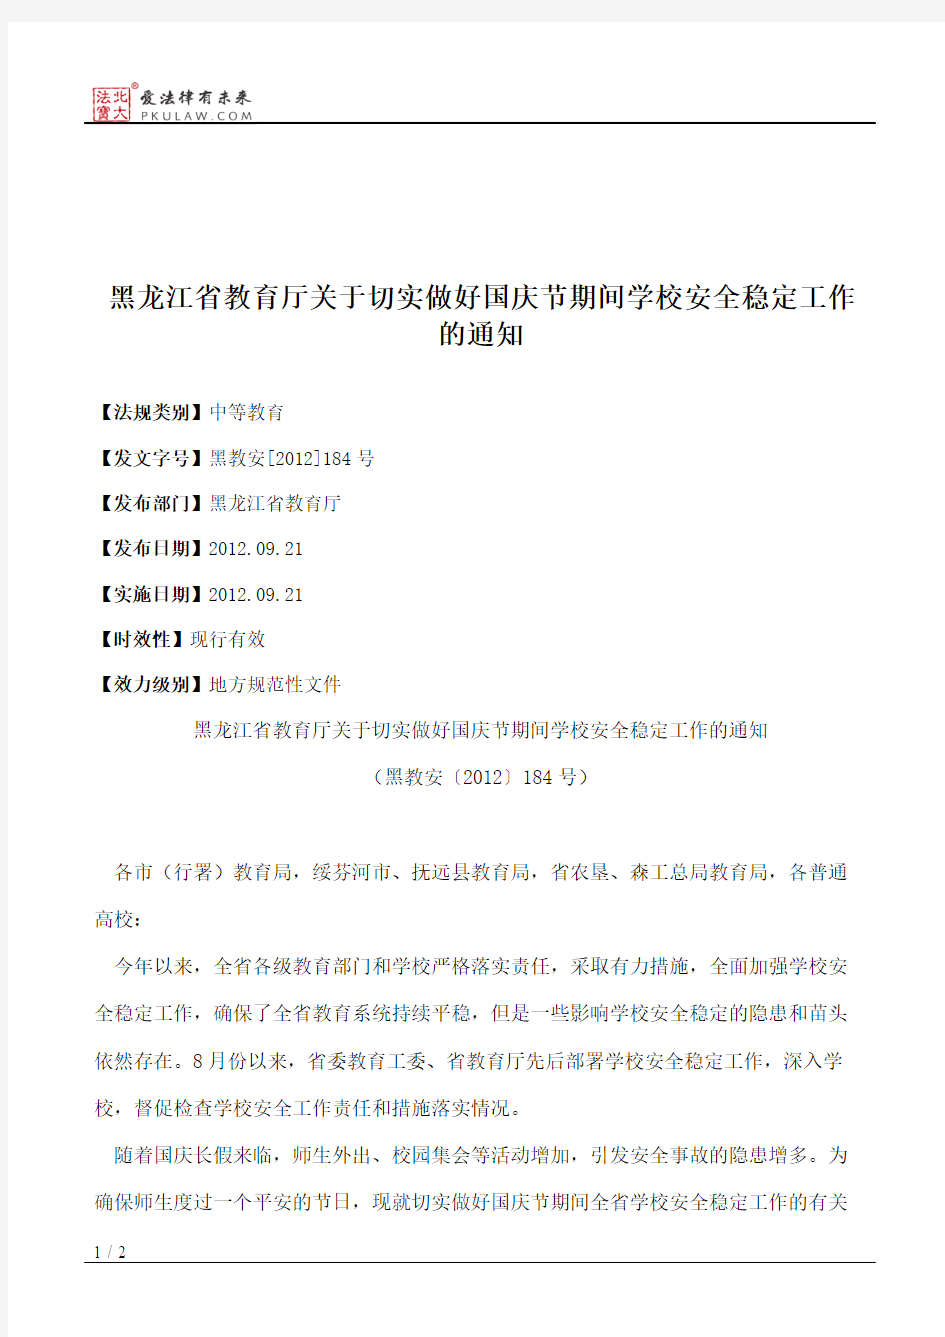 黑龙江省教育厅关于切实做好国庆节期间学校安全稳定工作的通知